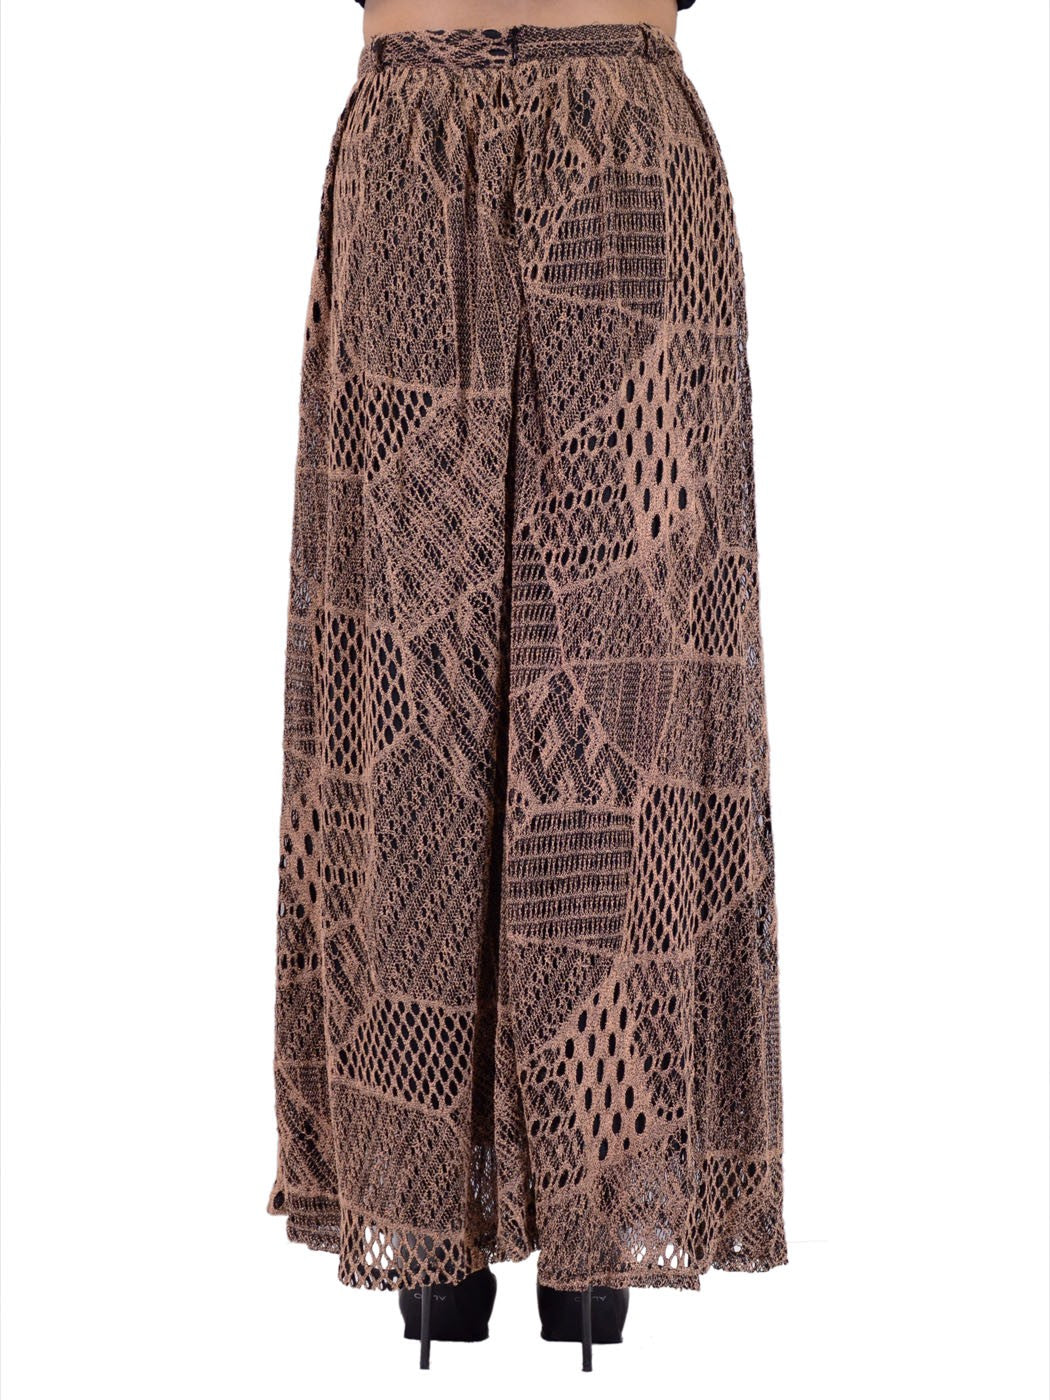 Oxford Circus Bohemian Chunky Abstract Mesh Pattern Long Knit Maxi Skirt - ALILANG.COM